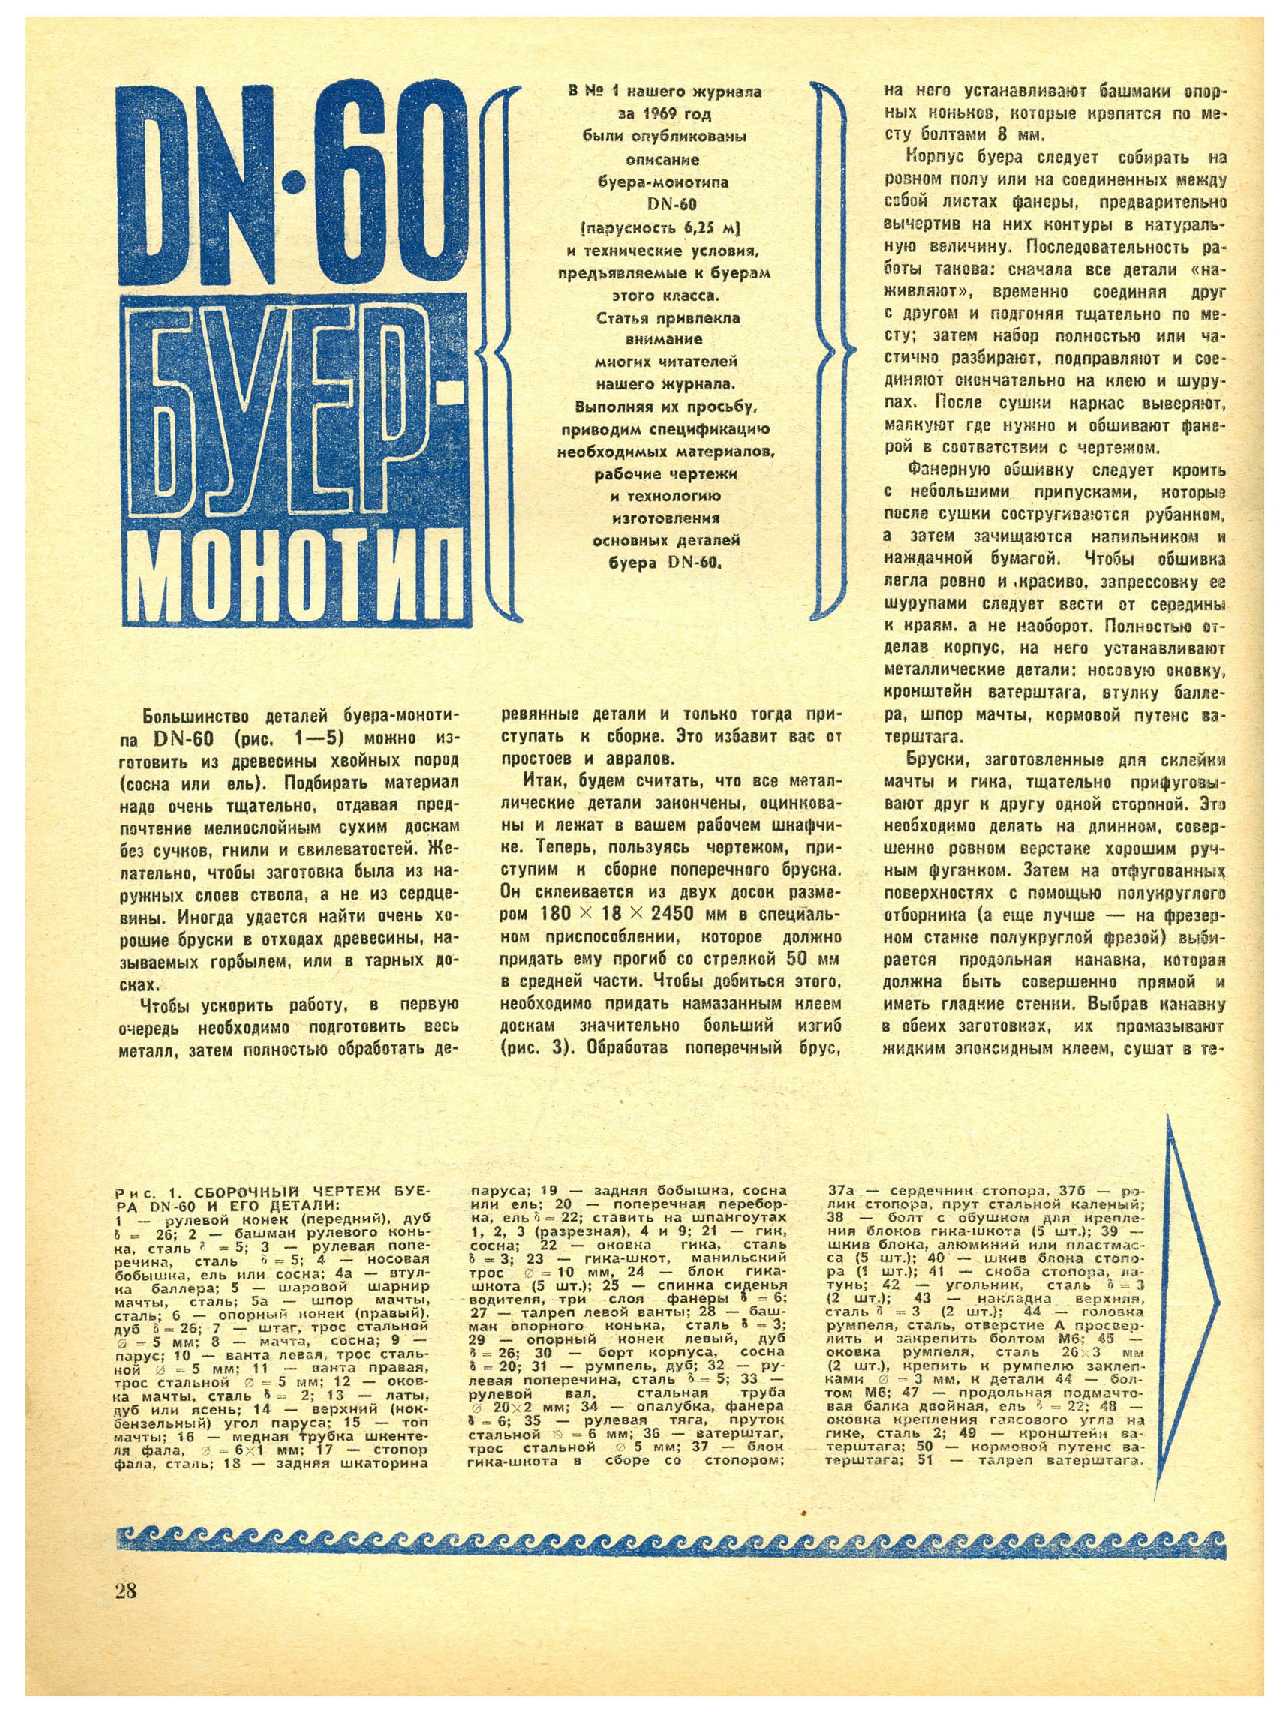 МК 1, 1970, 28 c.